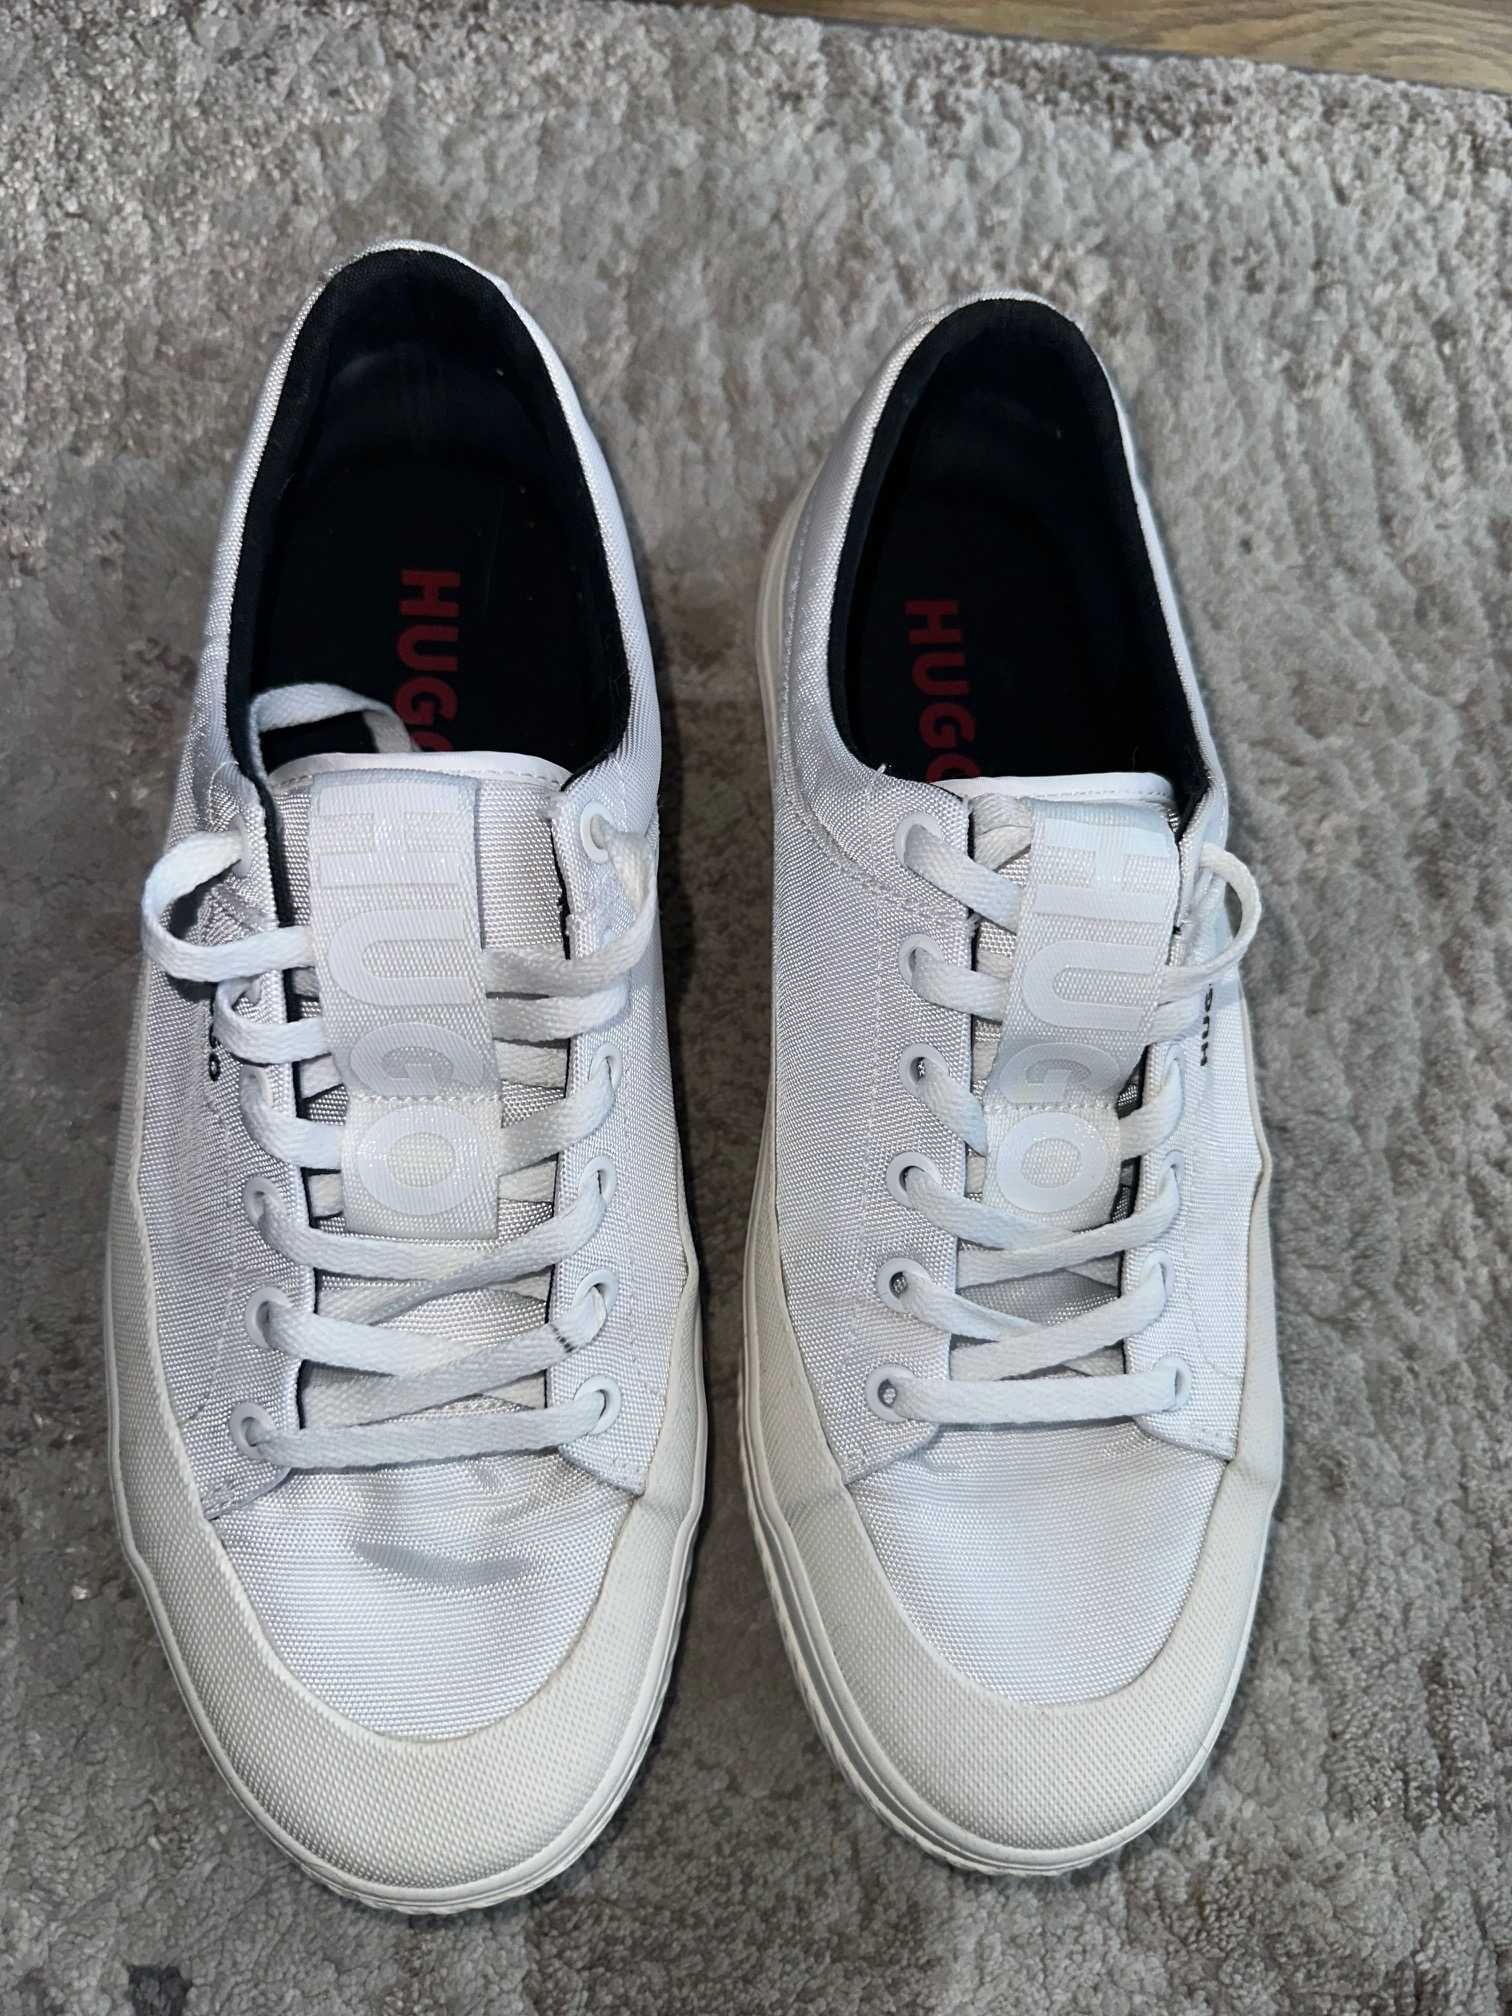 Tenisówki buty HUGO BOSS białe rozmiar 42 - 43